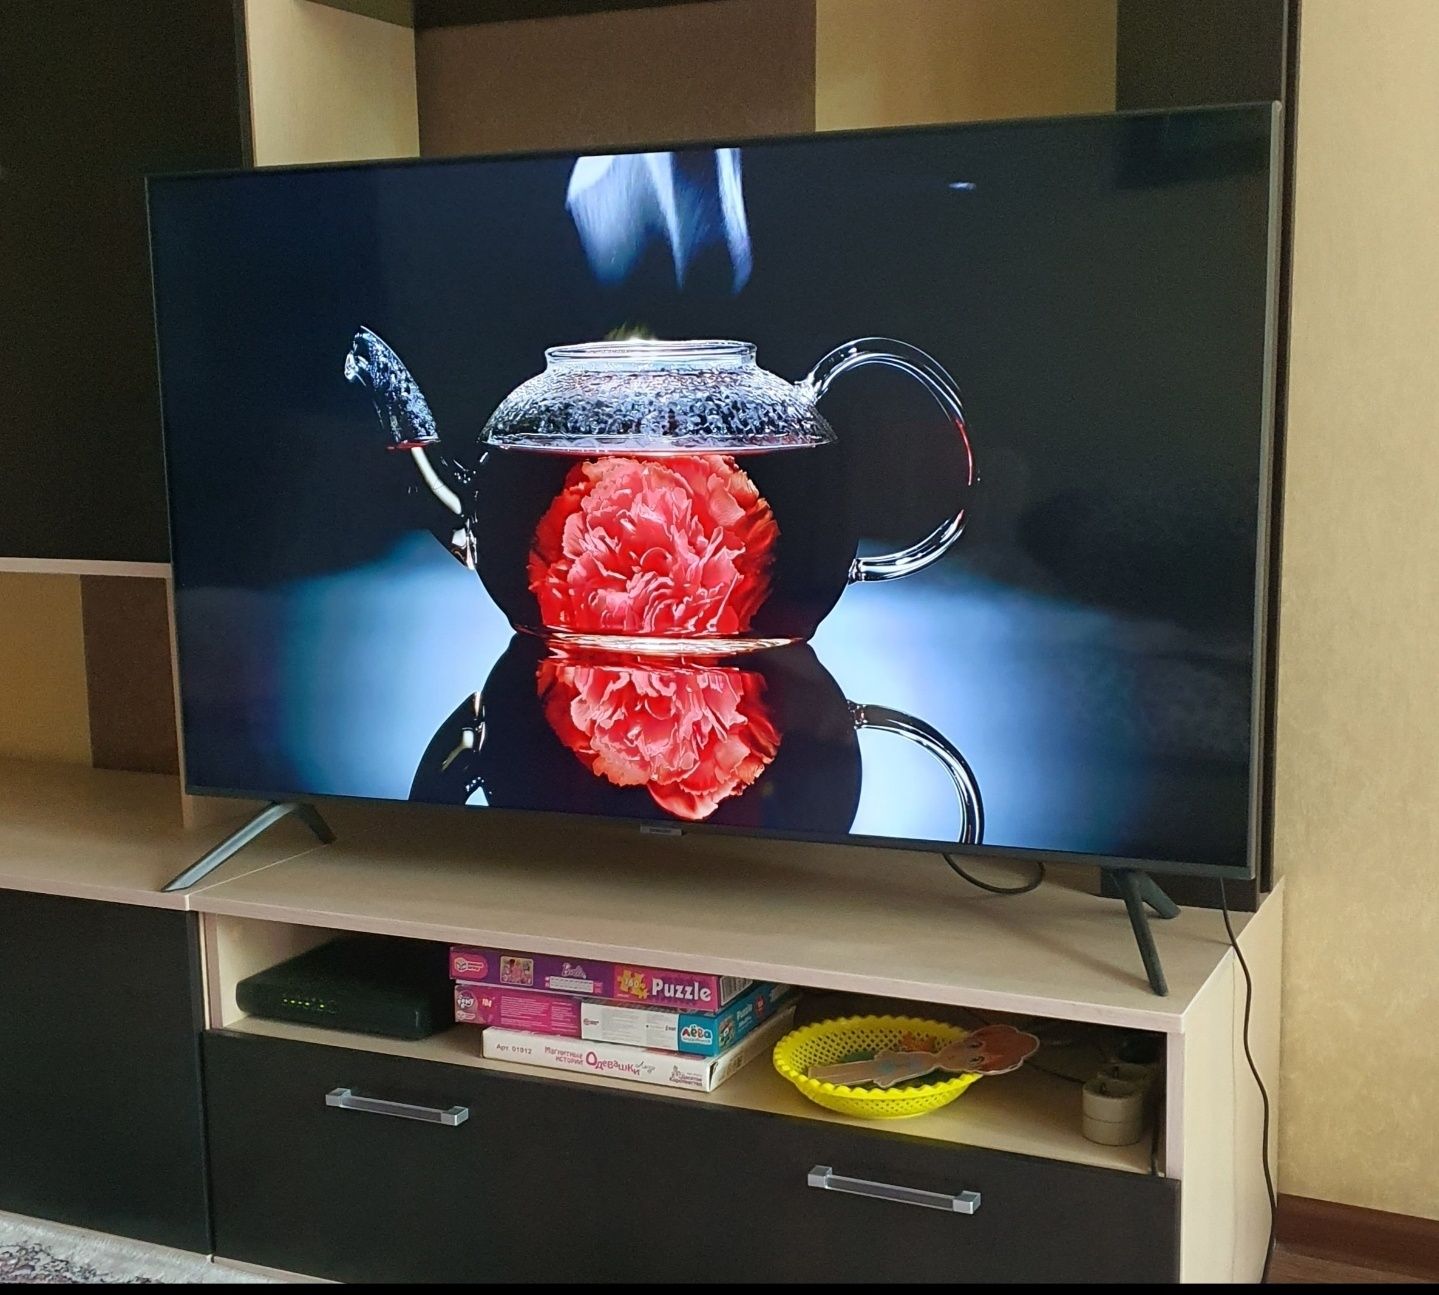 Шикарный 4К телевизор оригинал Samsung 130см